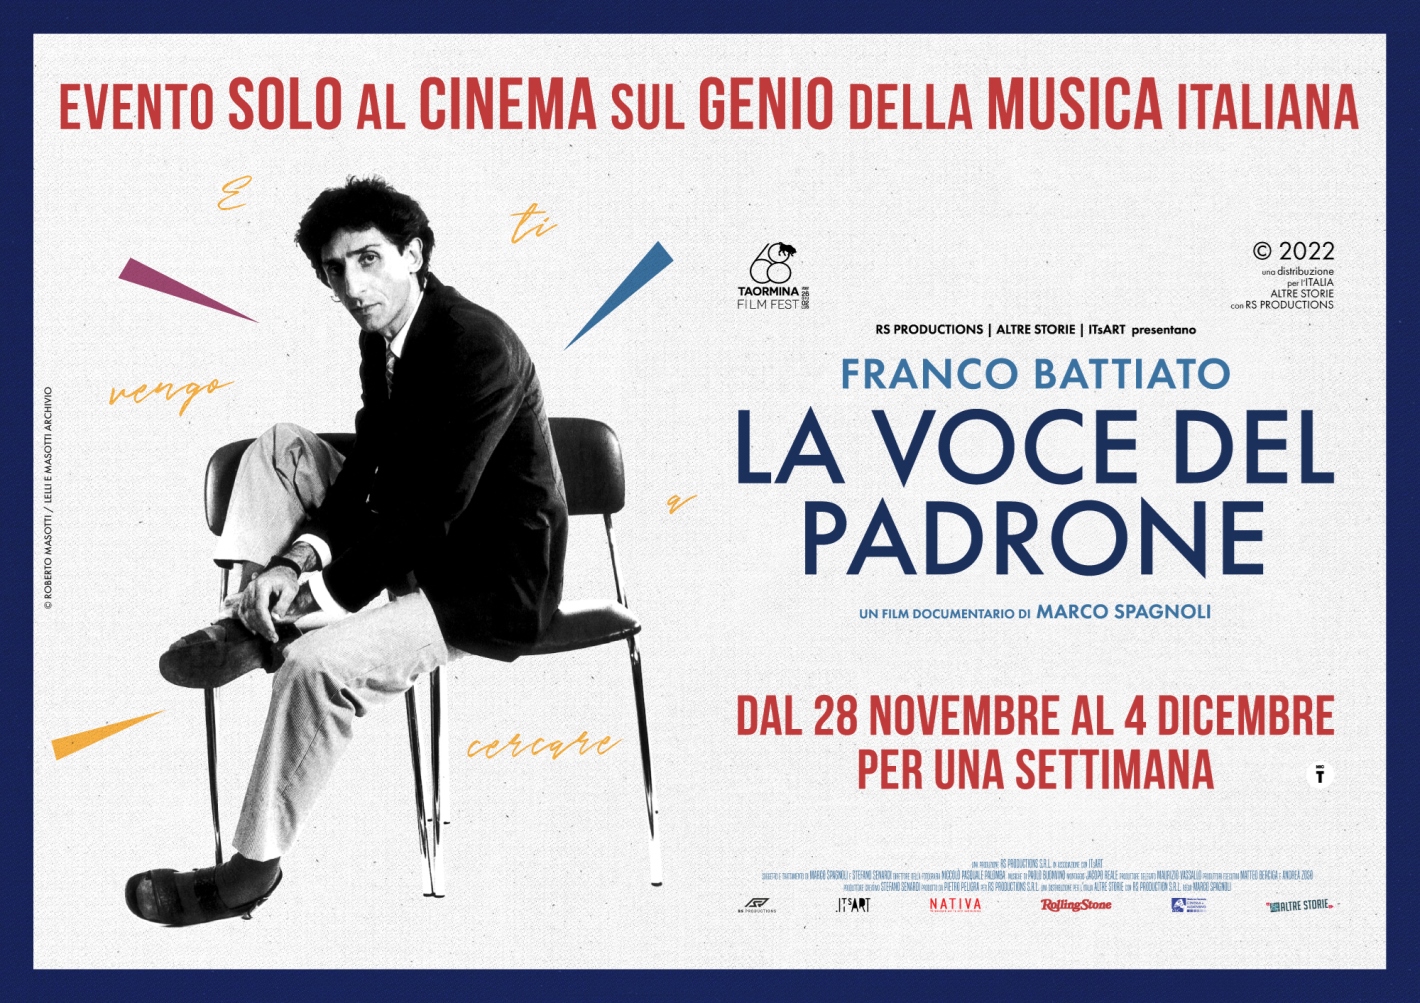 Franco Battiato, La Voce del Padrone, iI film evento di Marco Spagnoli dal 28 novembre al 4 dicembre solo al cinema